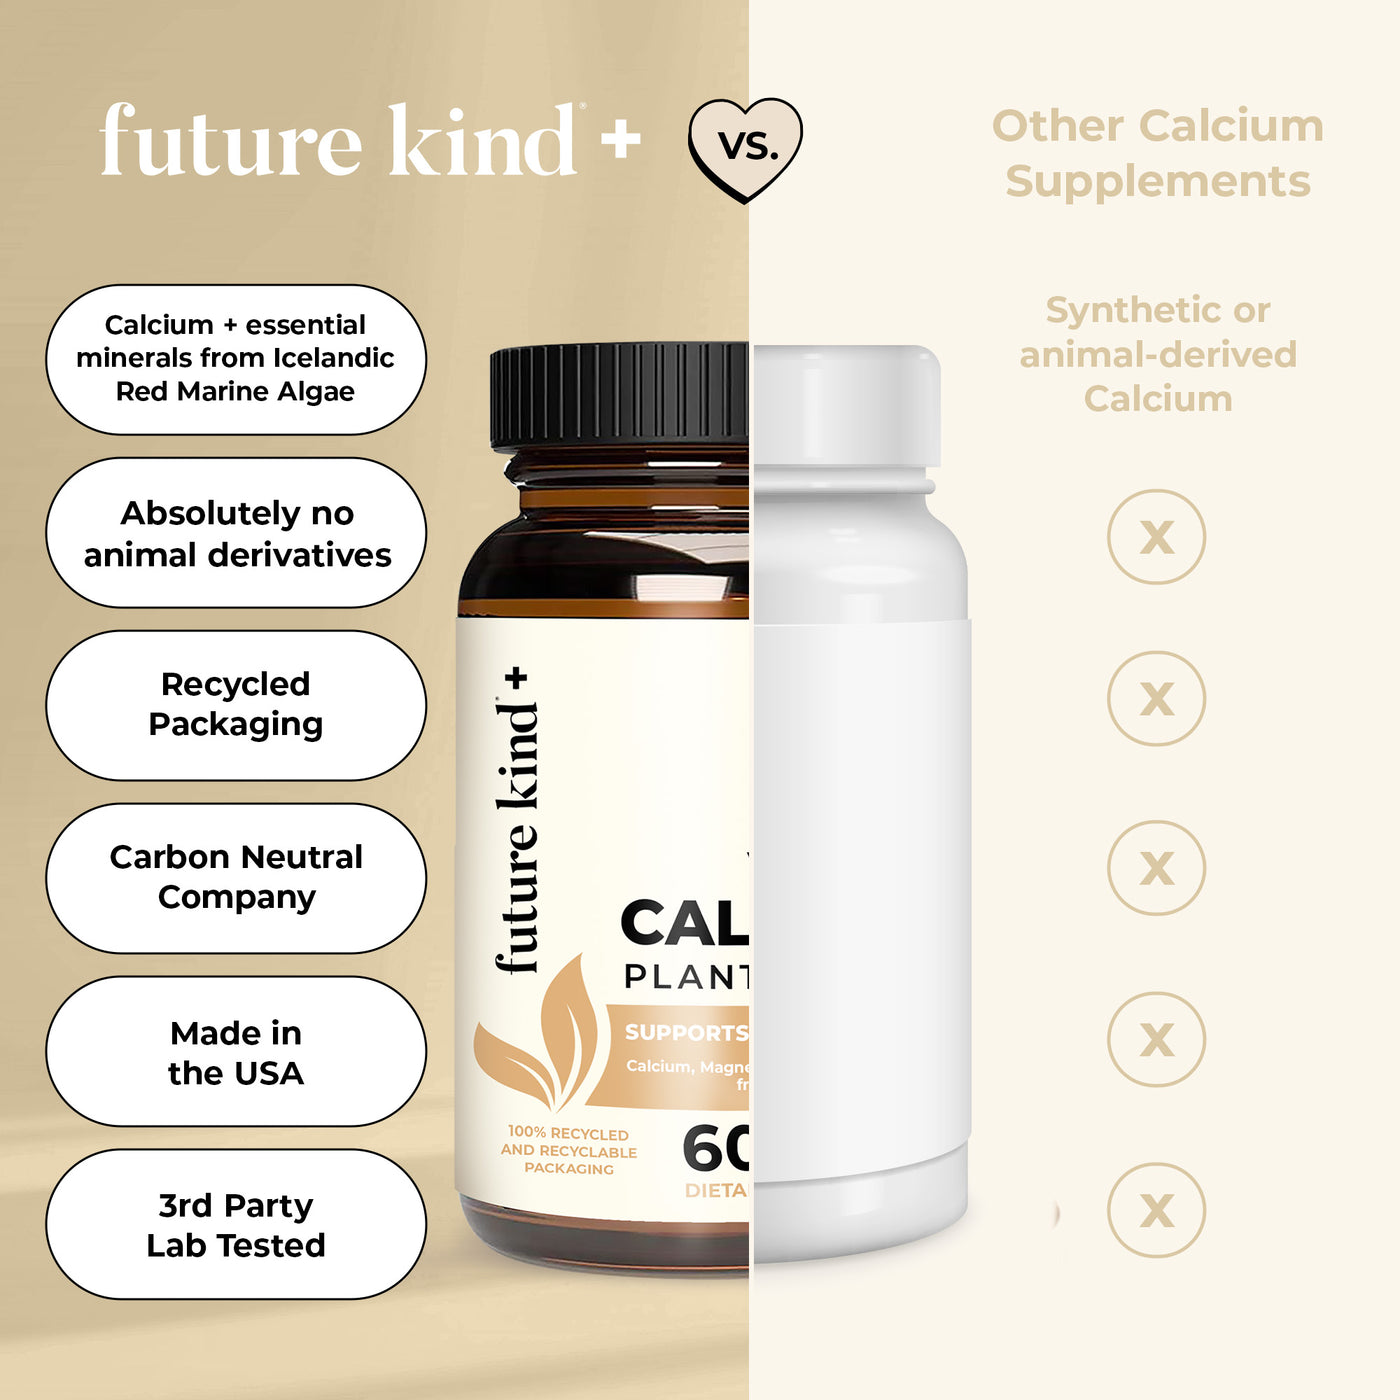 Vegan Calcium Supplement